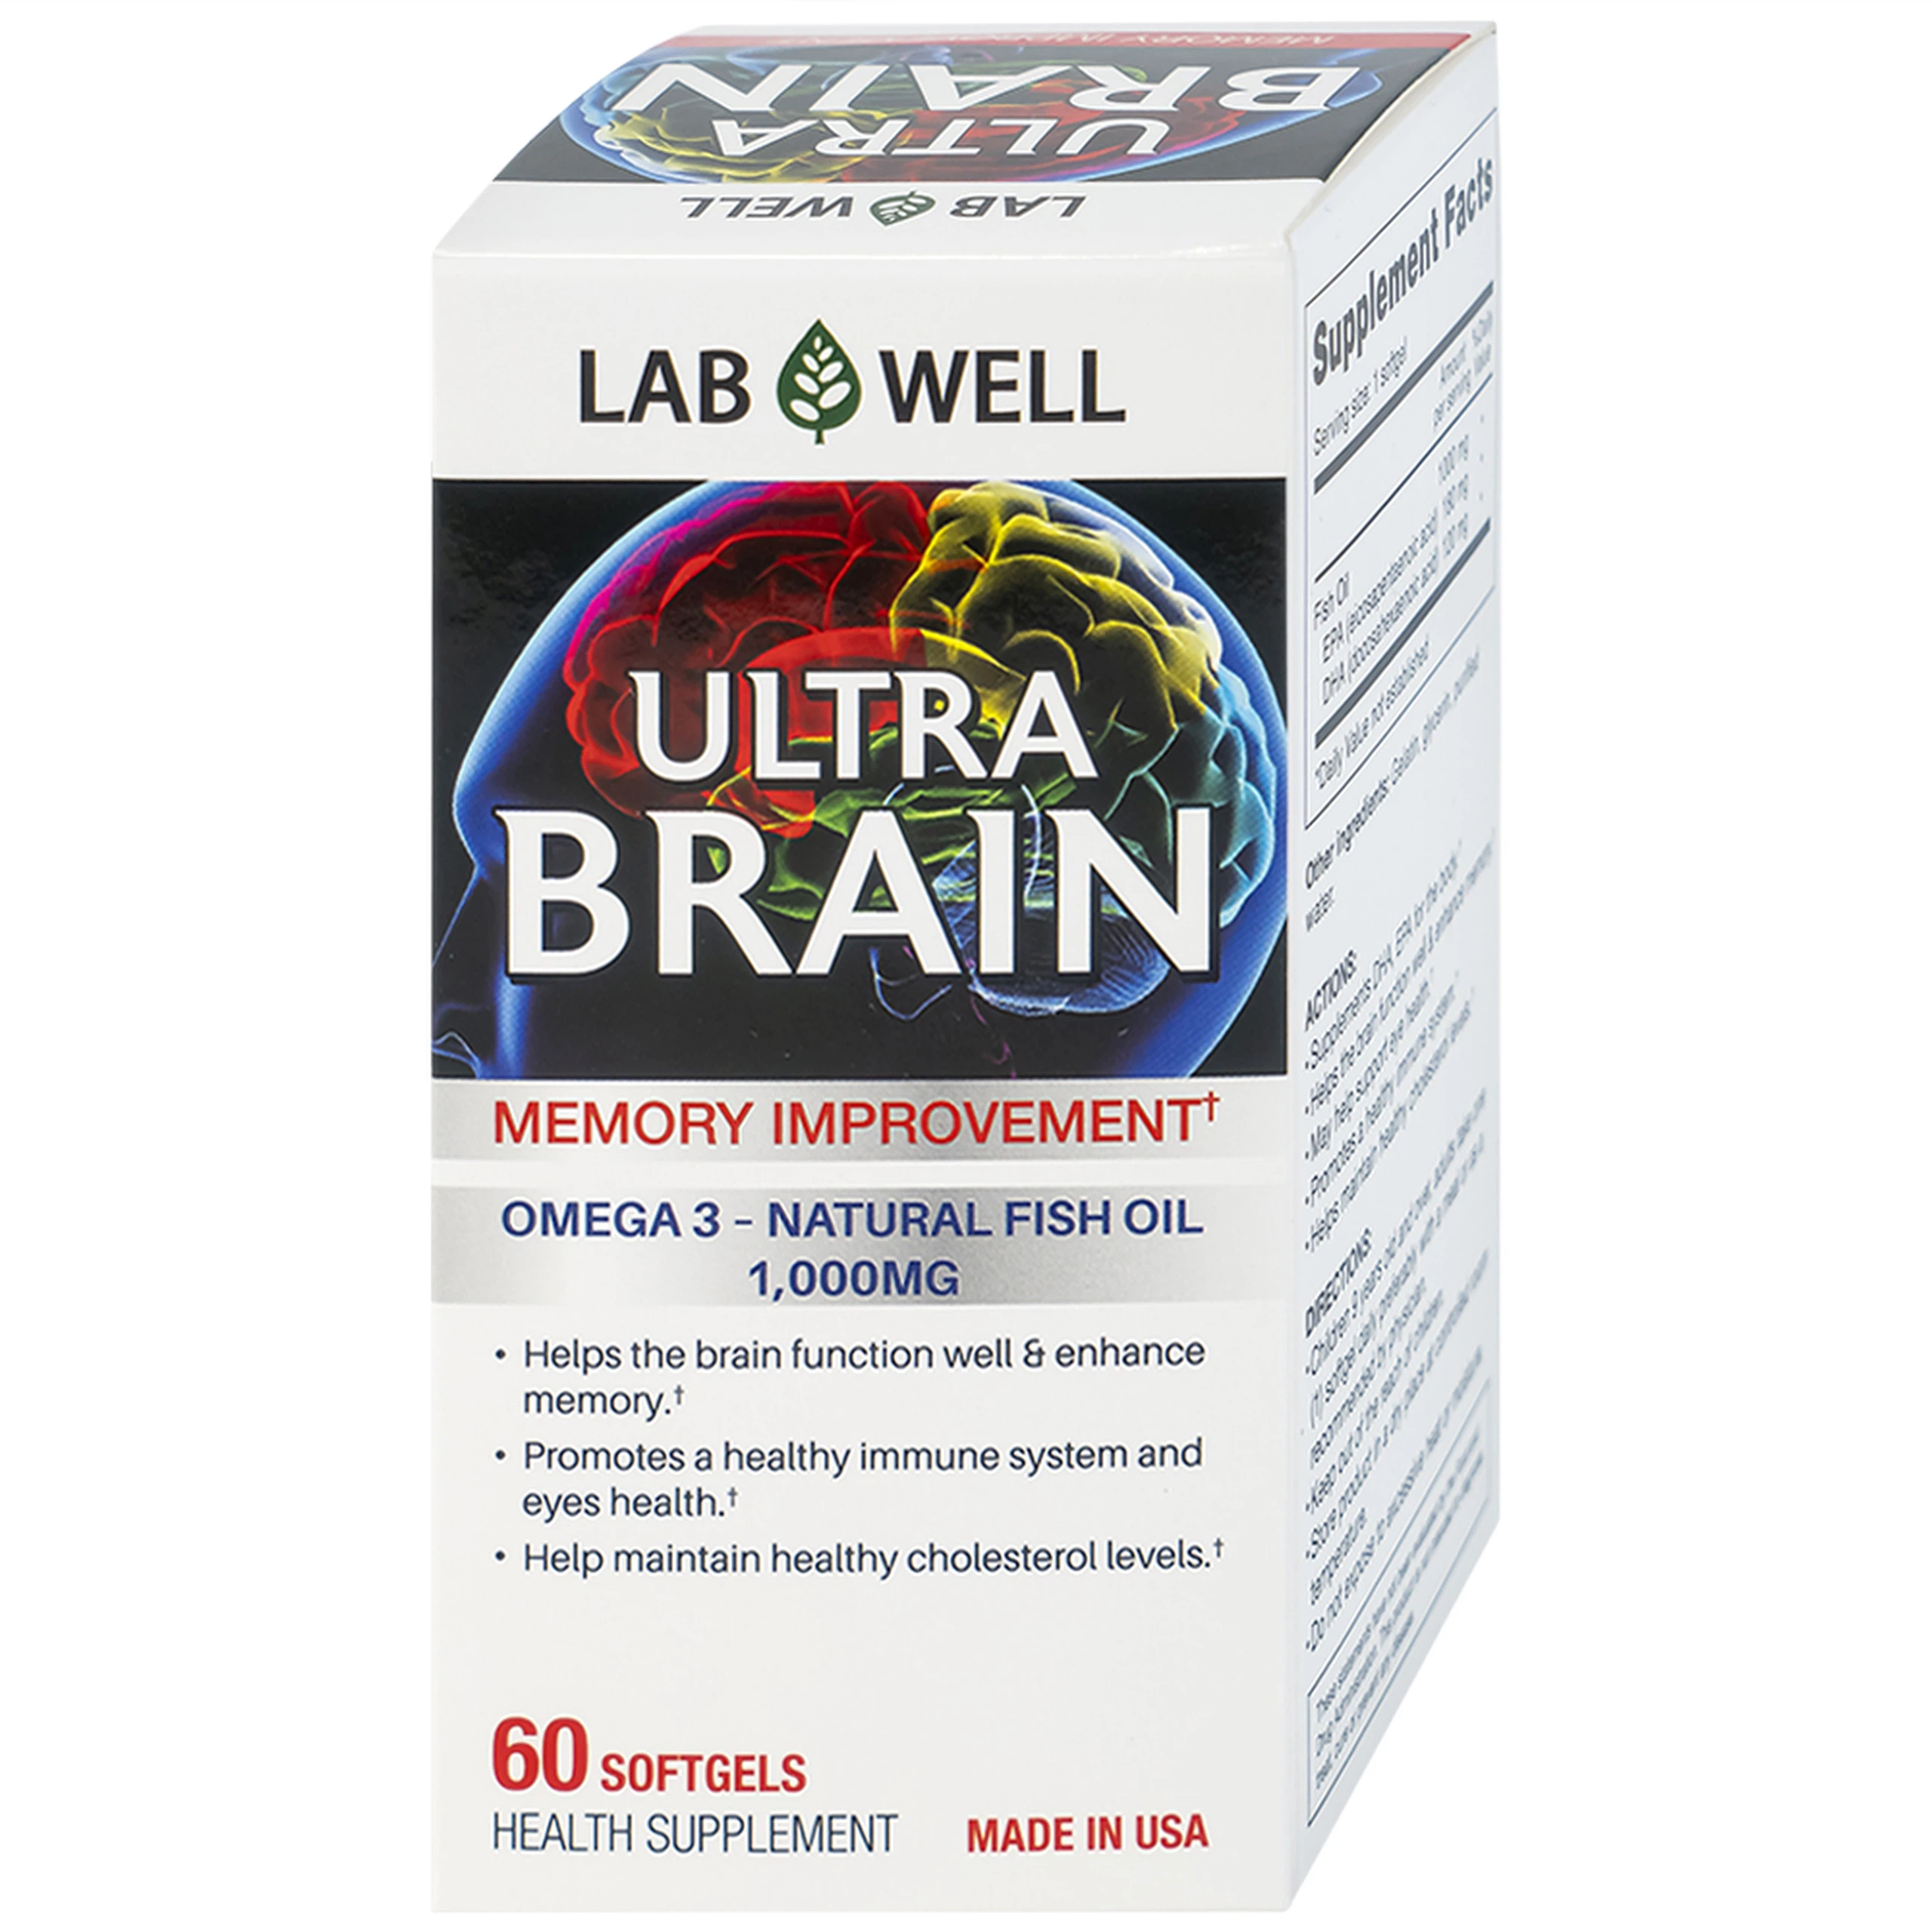 Viên uống Ultra Brain Lab Well hỗ trợ bổ sung DHA, EPA cho cơ thể (60 viên)